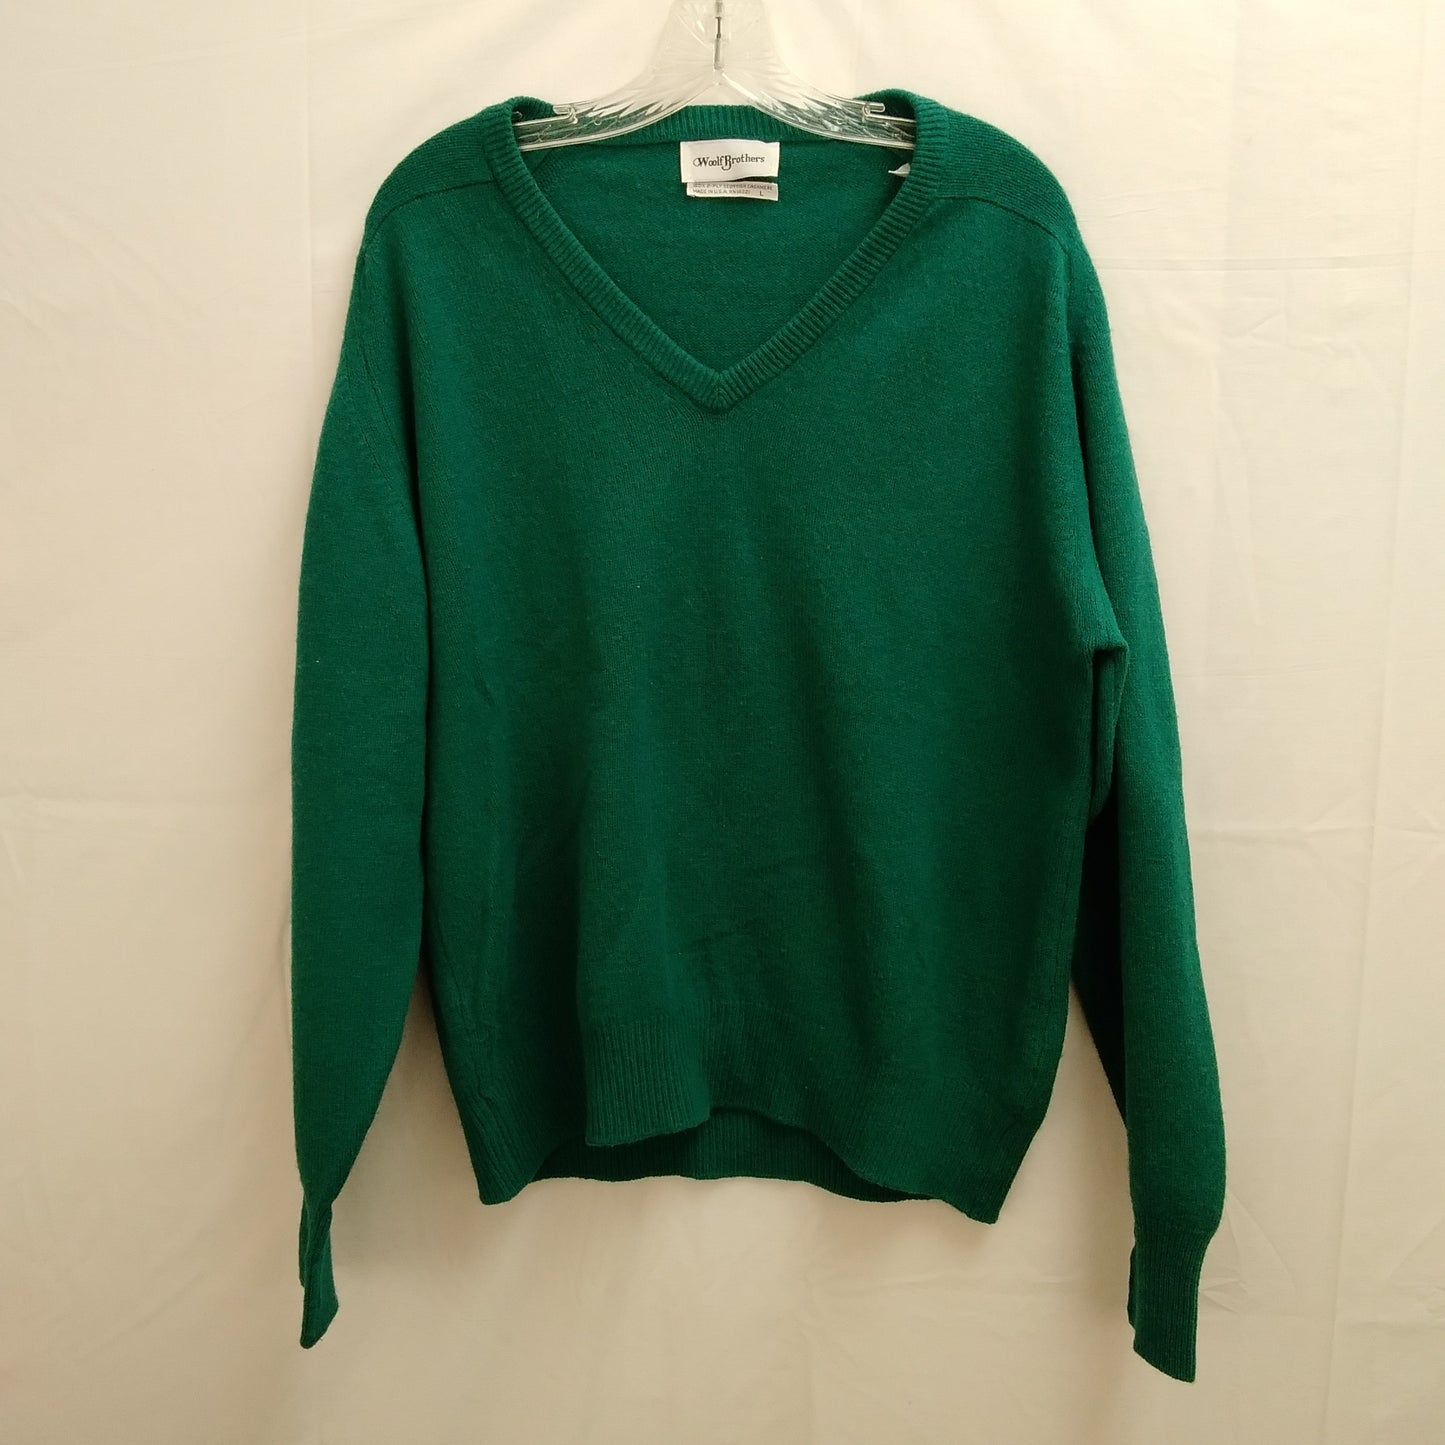 VTG - Woolf Brothers Teal Green V-Neck Cashmere Sweater - L